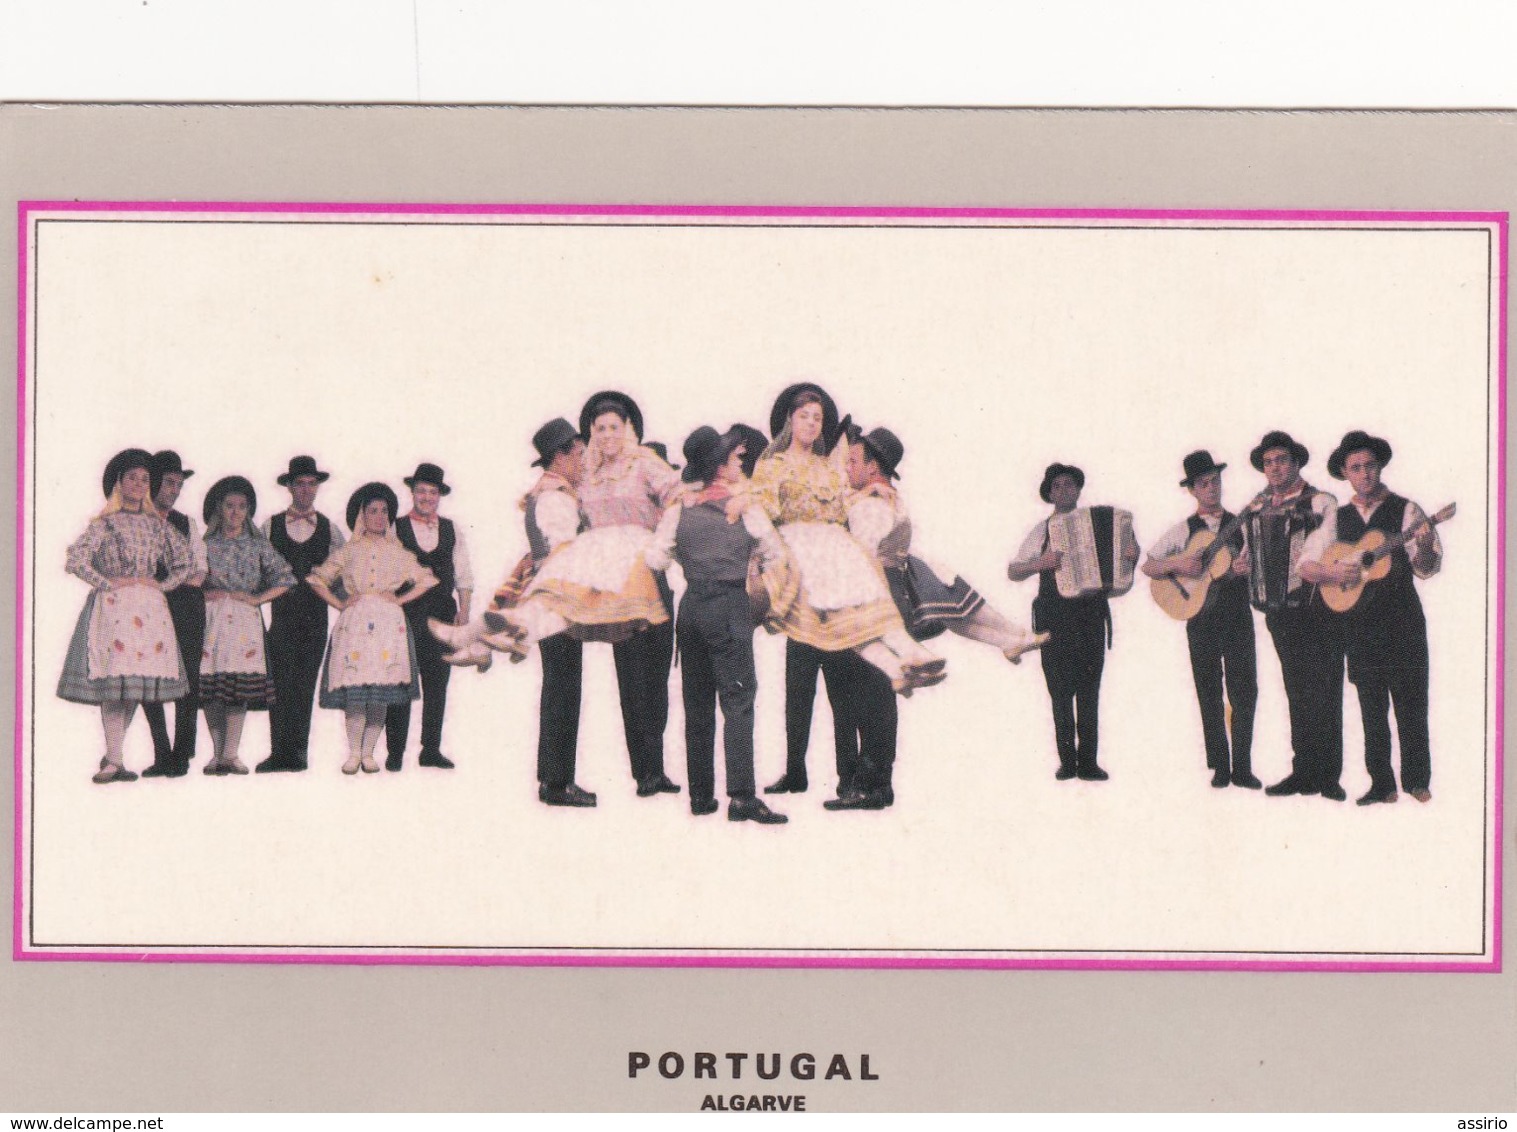 Portugal -costumes -folclore  8 postais com nºs  (1-2-3-4-7-8-10-11 ) alguns com vestigios de umidade